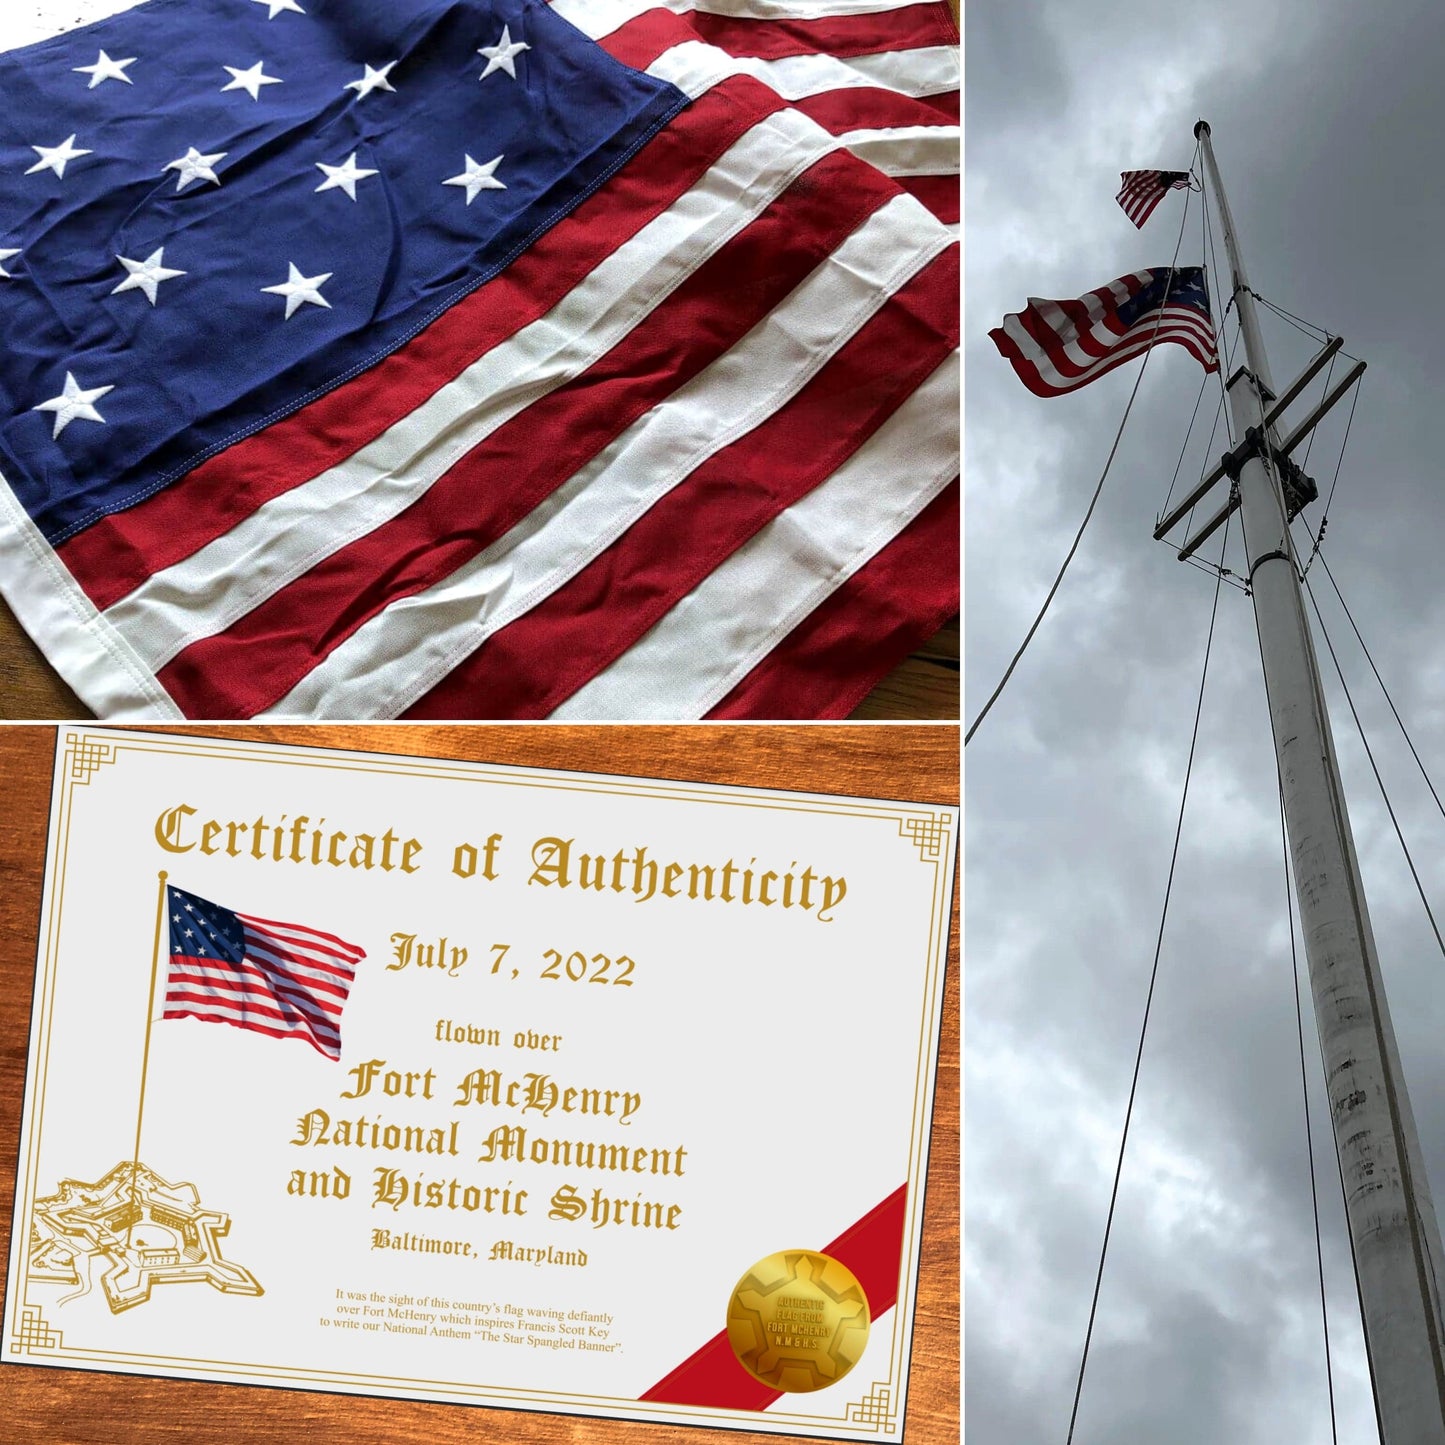 Star-Spangled Banner -15 stars, 15 stripes - Flown over Fort McHenry